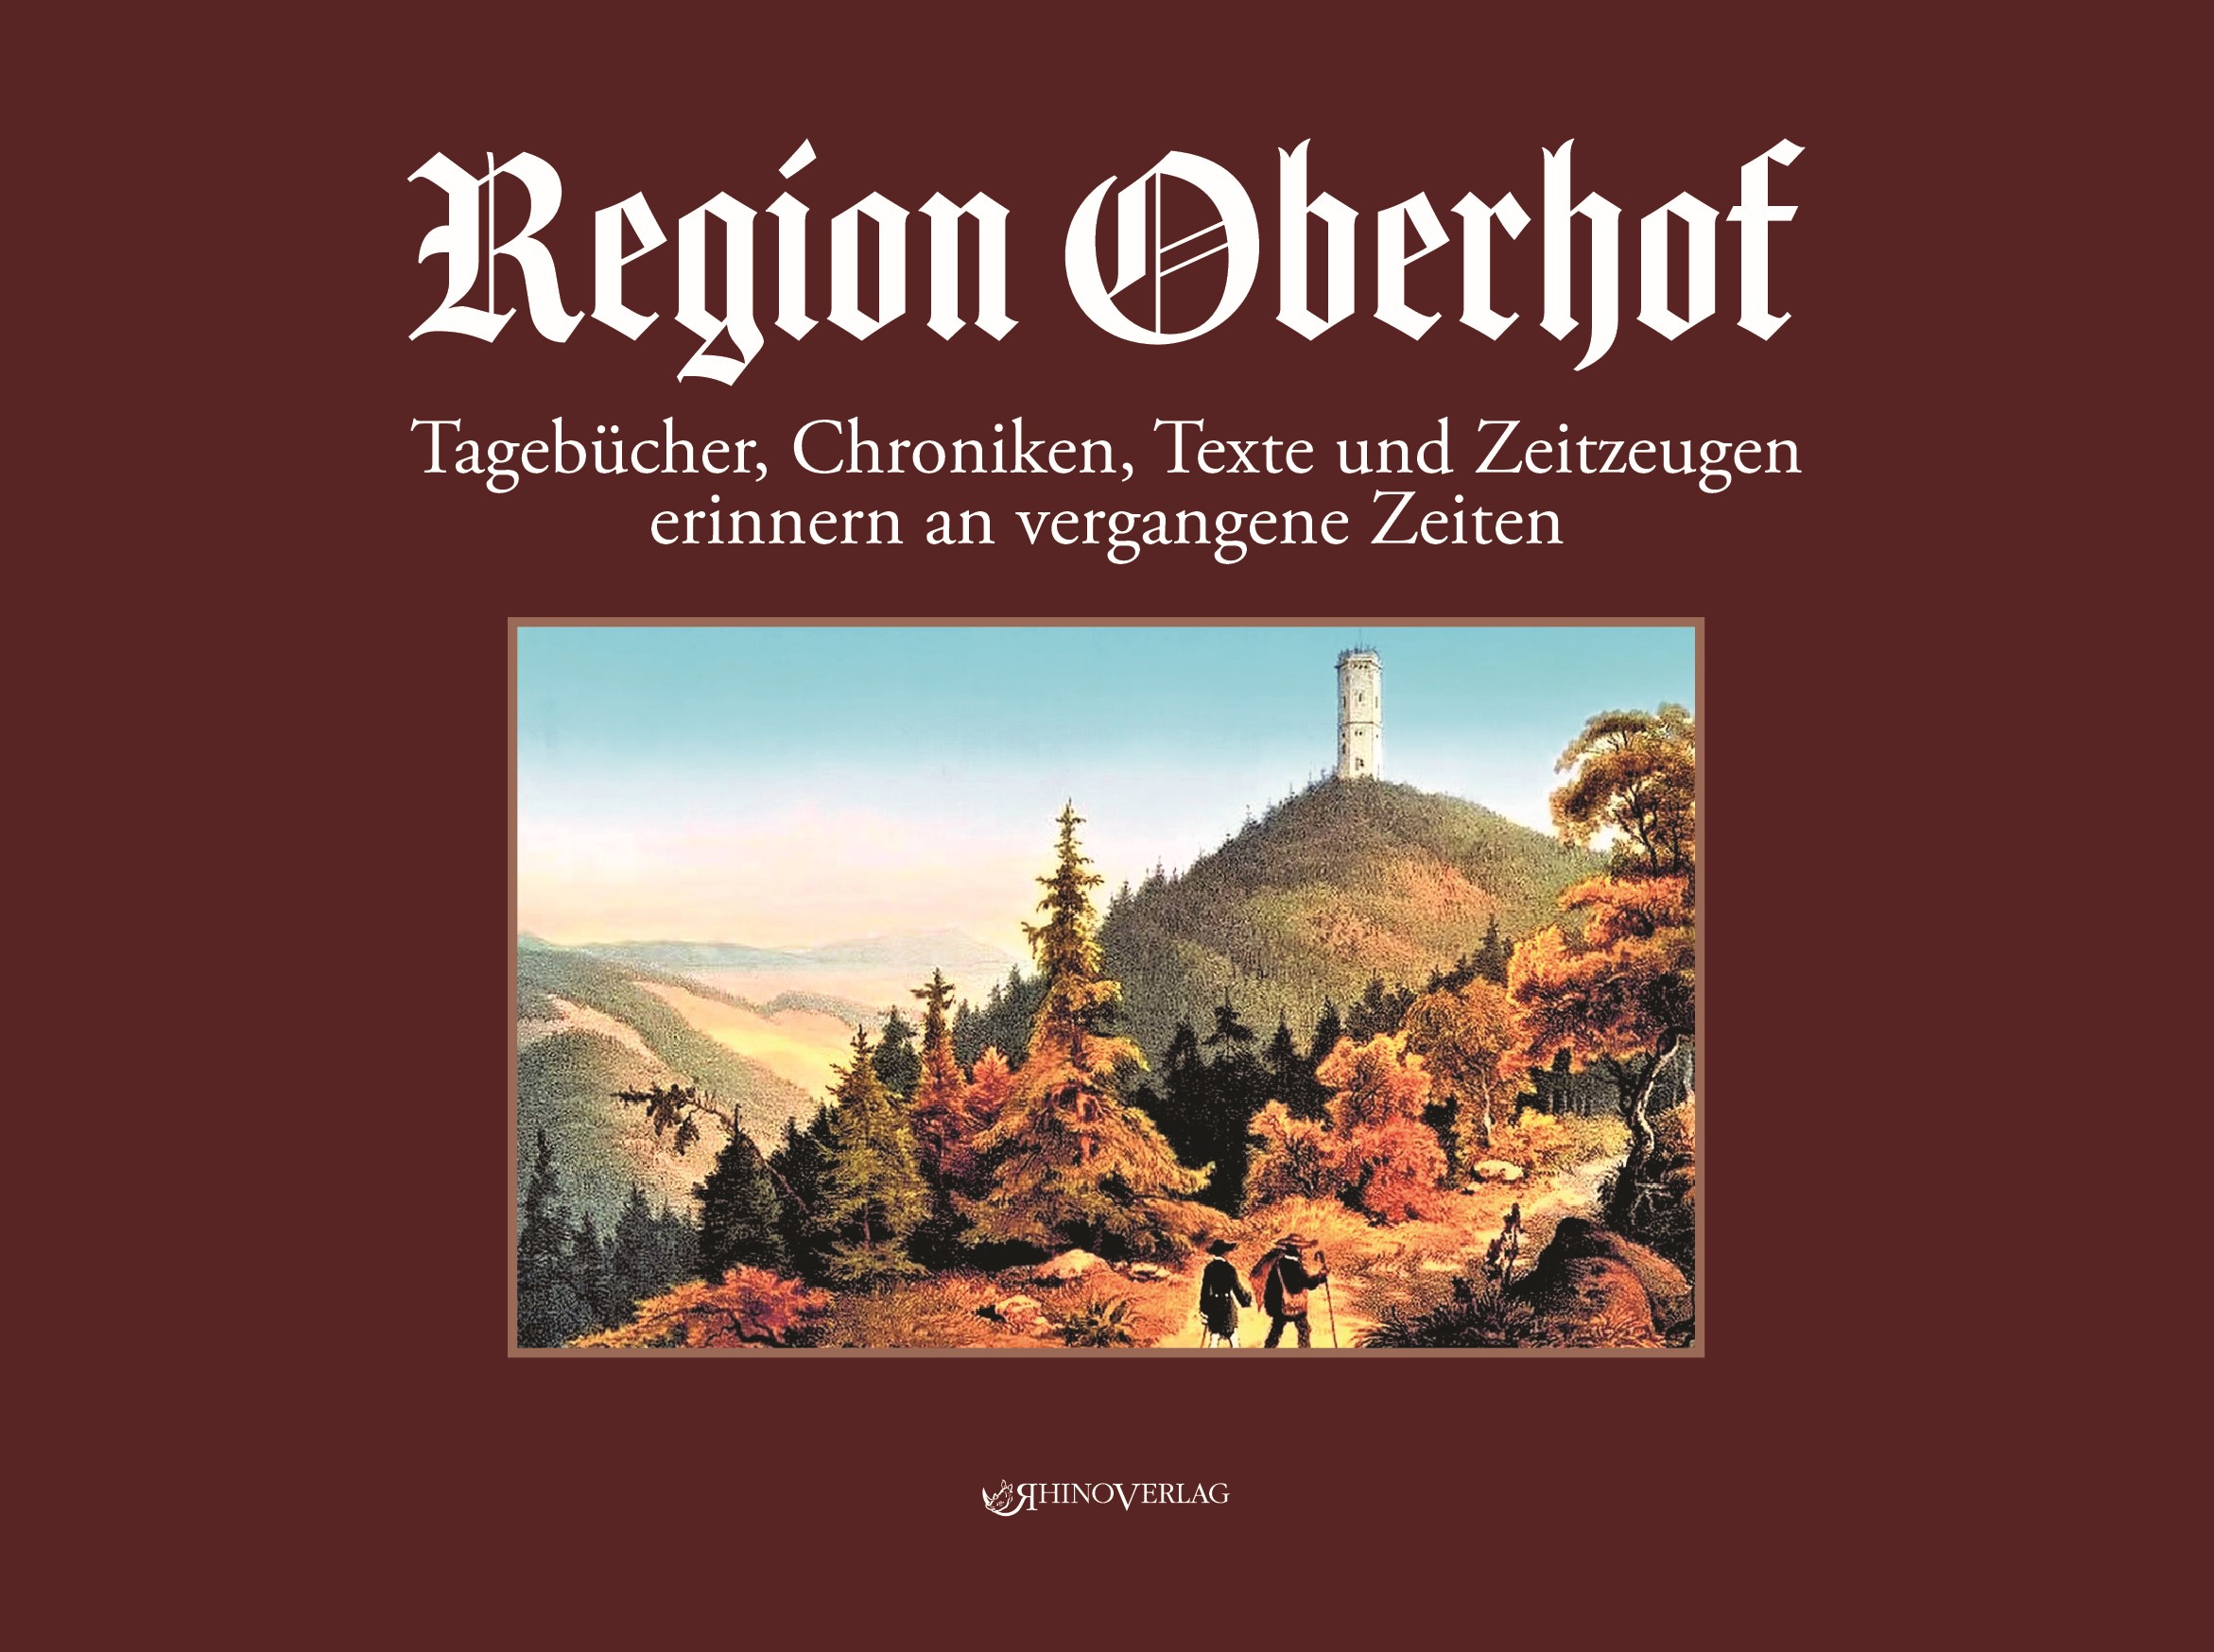 Region Oberhof